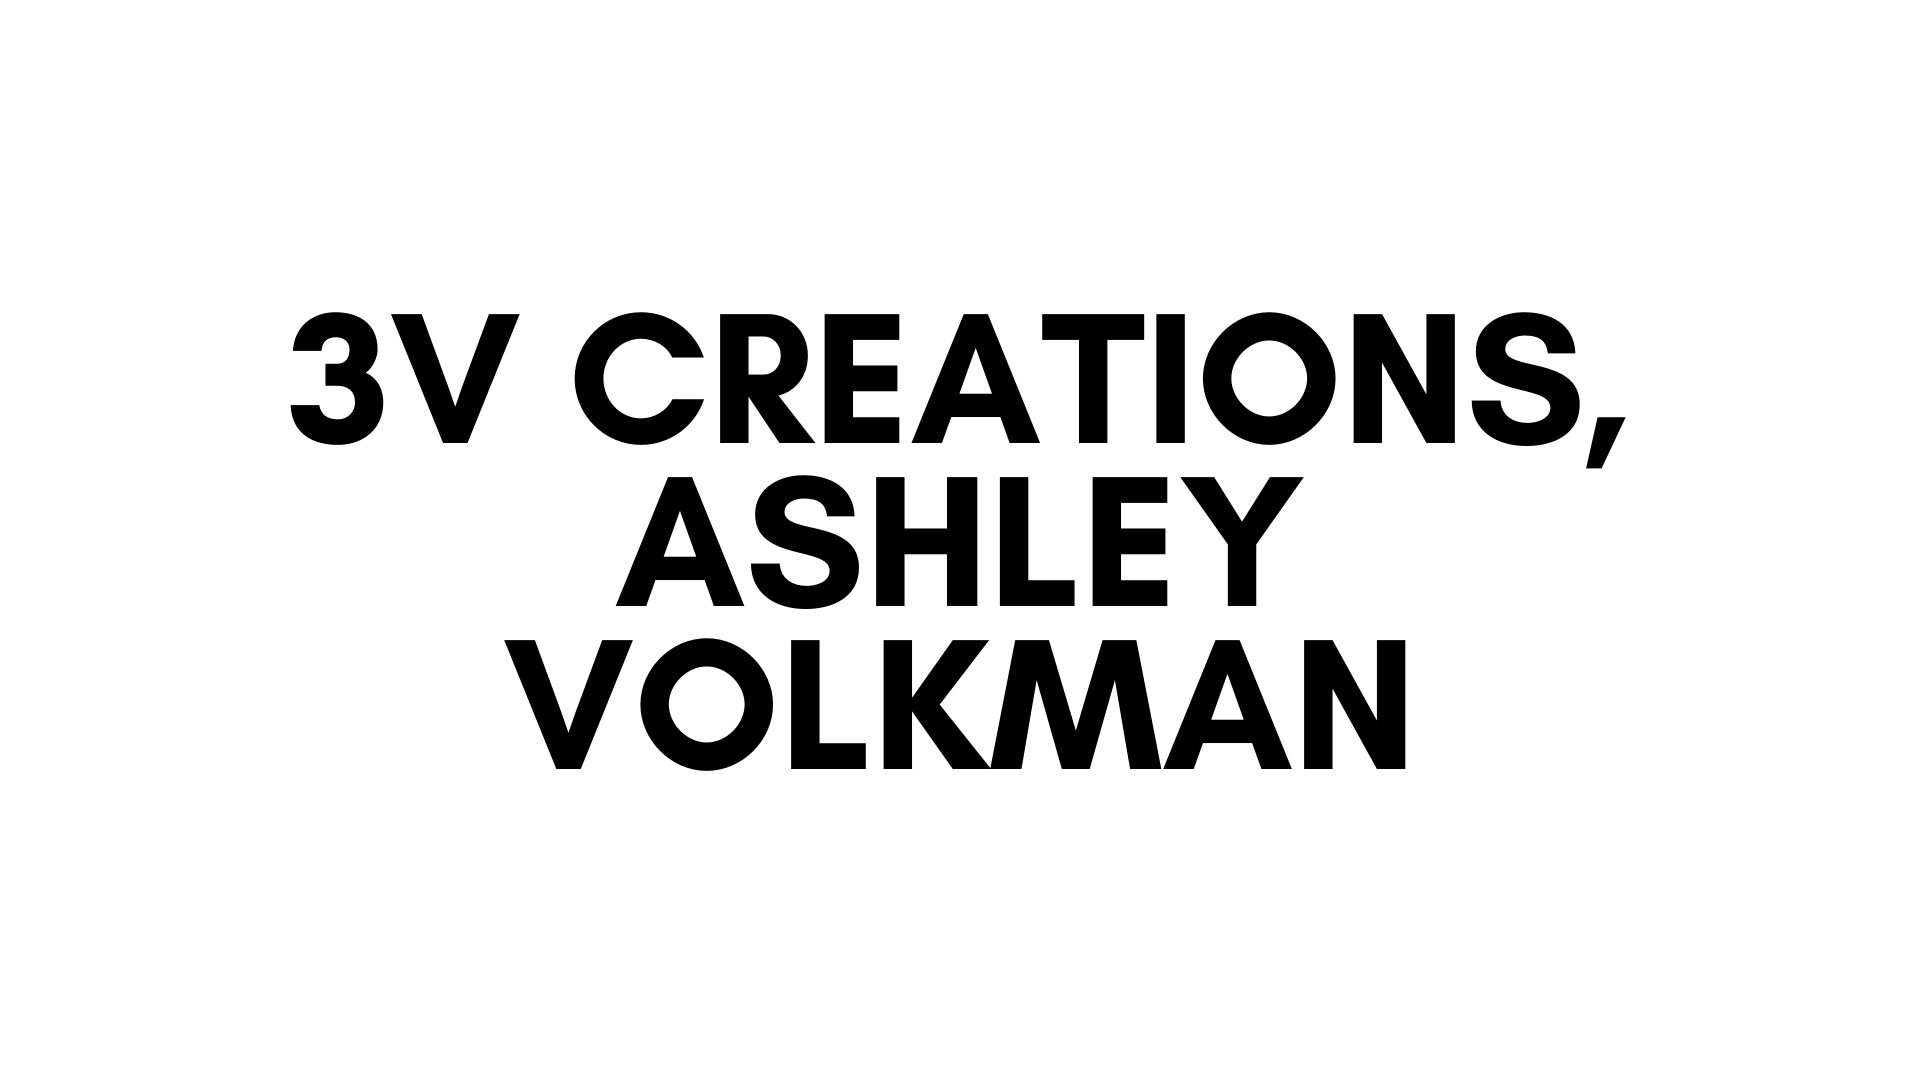 3V CREATIONS ASHLEY VOLKMAN